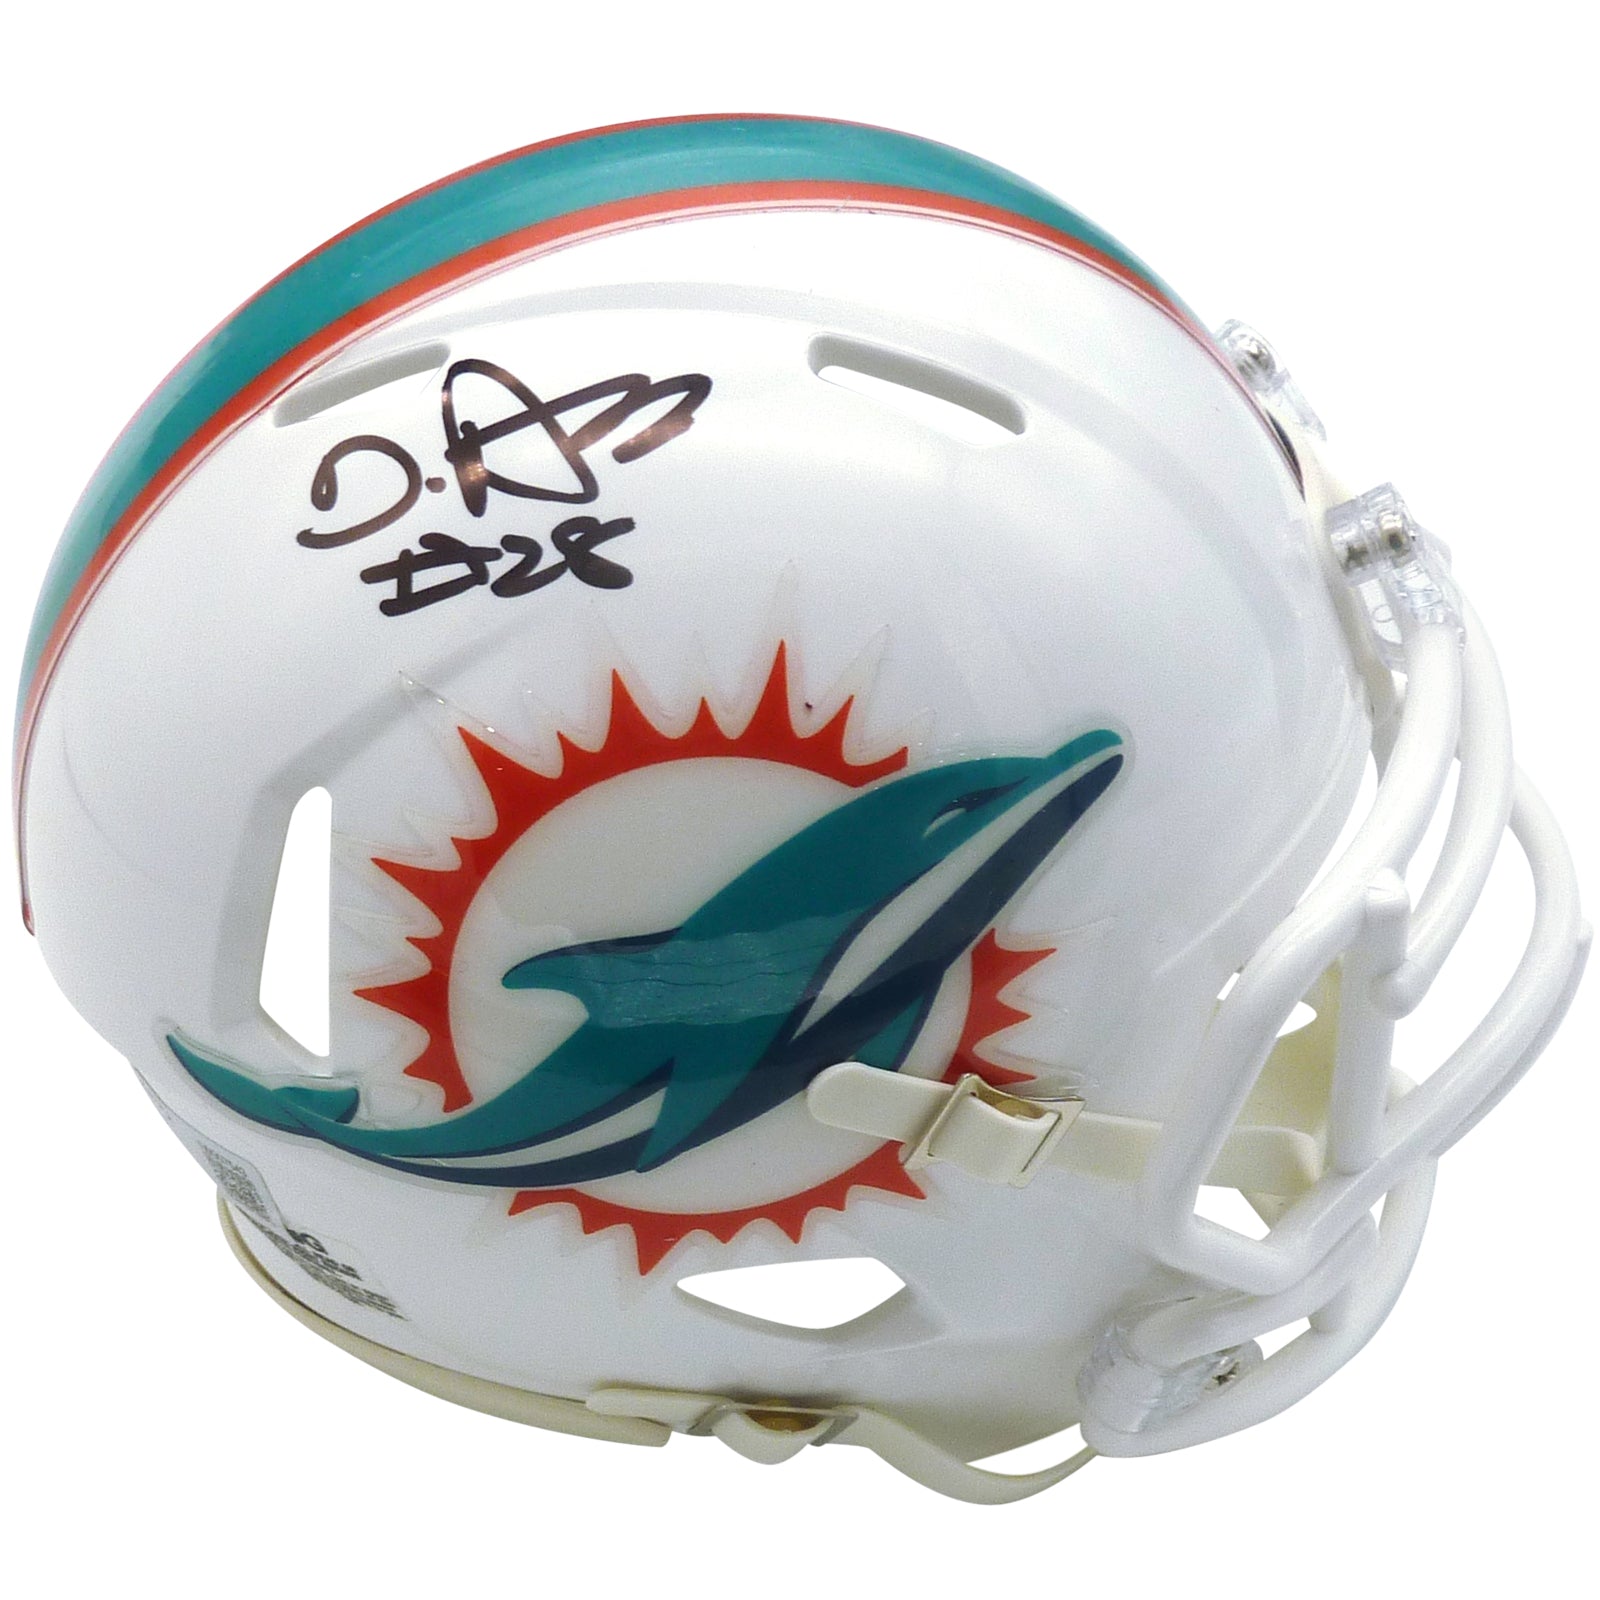 De'Von Achane Autographed Miami Dolphins Mini Helmet - Beckett